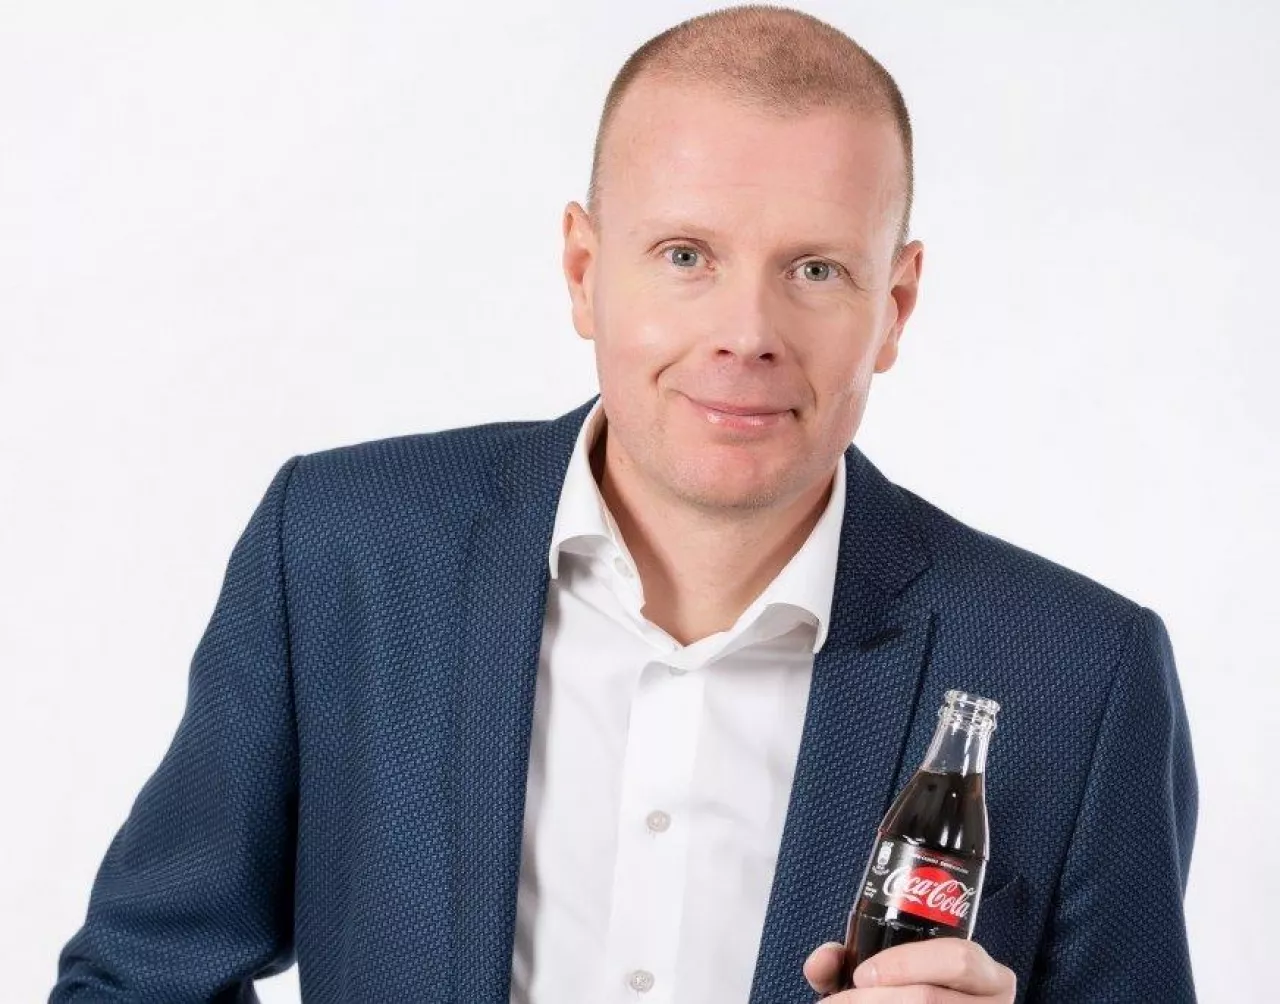 Jaak Mikkel, Coca Cola HBC Polska i Kraje Bałtyckie (fot. materiały prasowe)